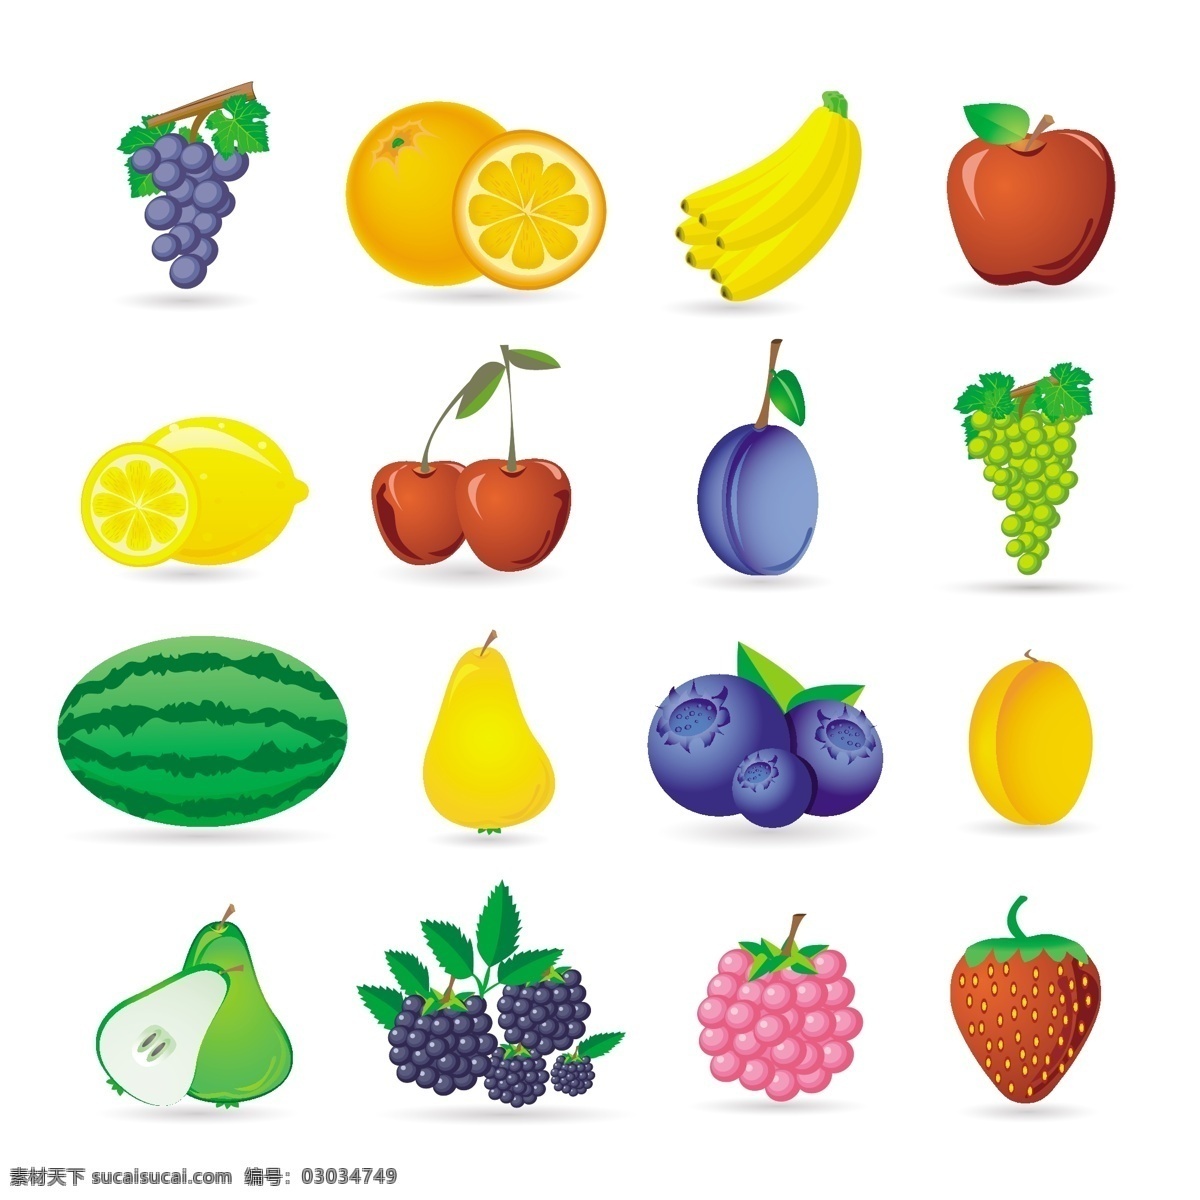 水果图标集 食品 图标 水果 苹果 桔子 热带 草莓 柠檬 健康 食品图标 樱桃 健康食品 西瓜 浆果 素食 梨 收集 白色